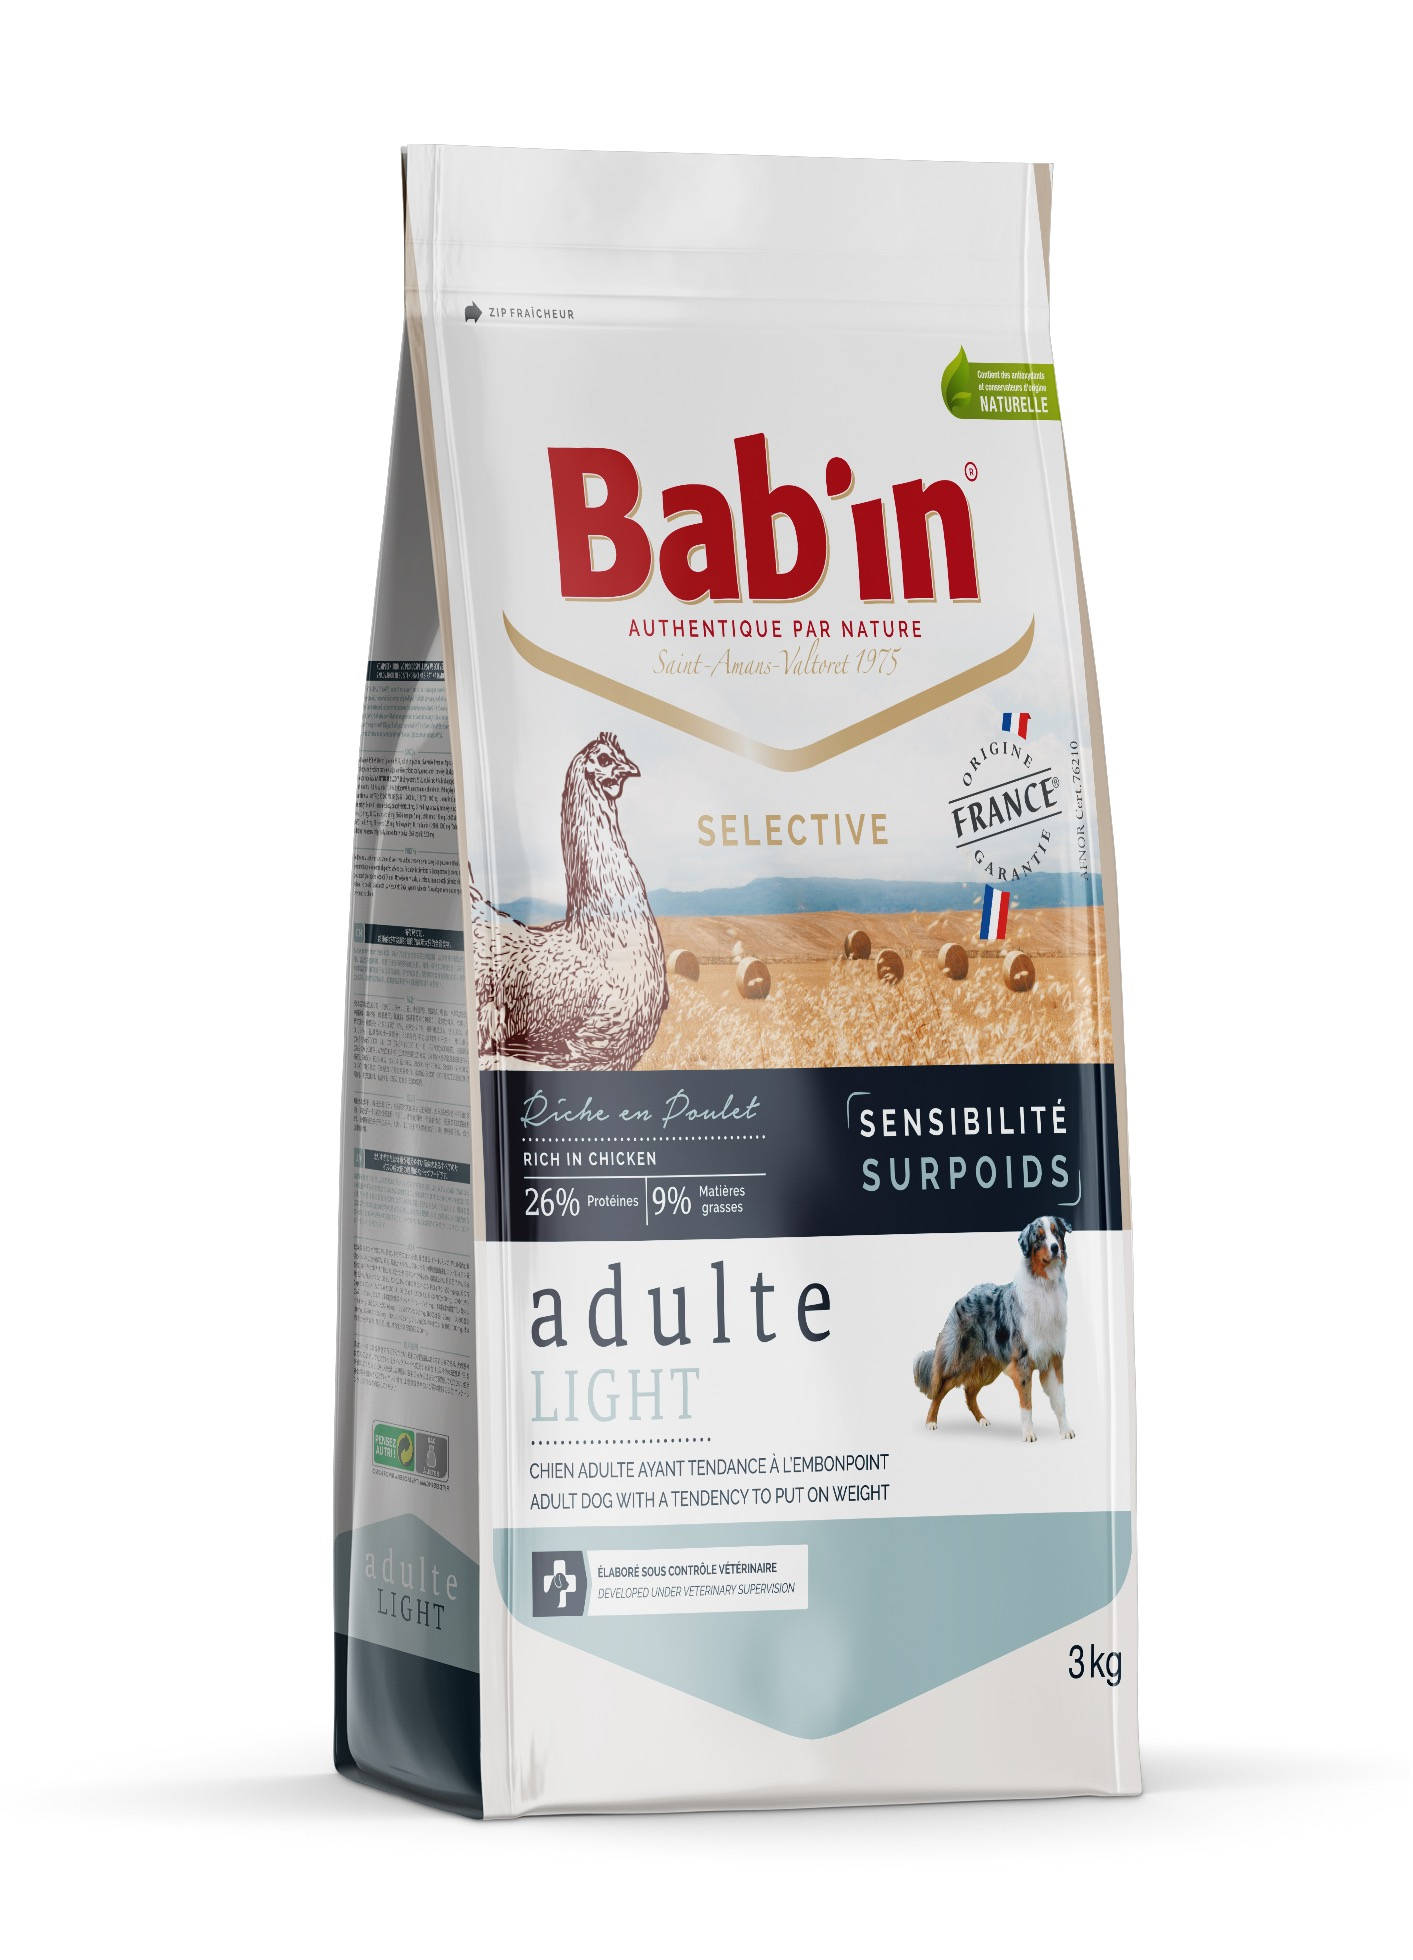 BAB'IN Selective Sensibilité Surpoids - Alimento seco de frango para cão com excesso de peso